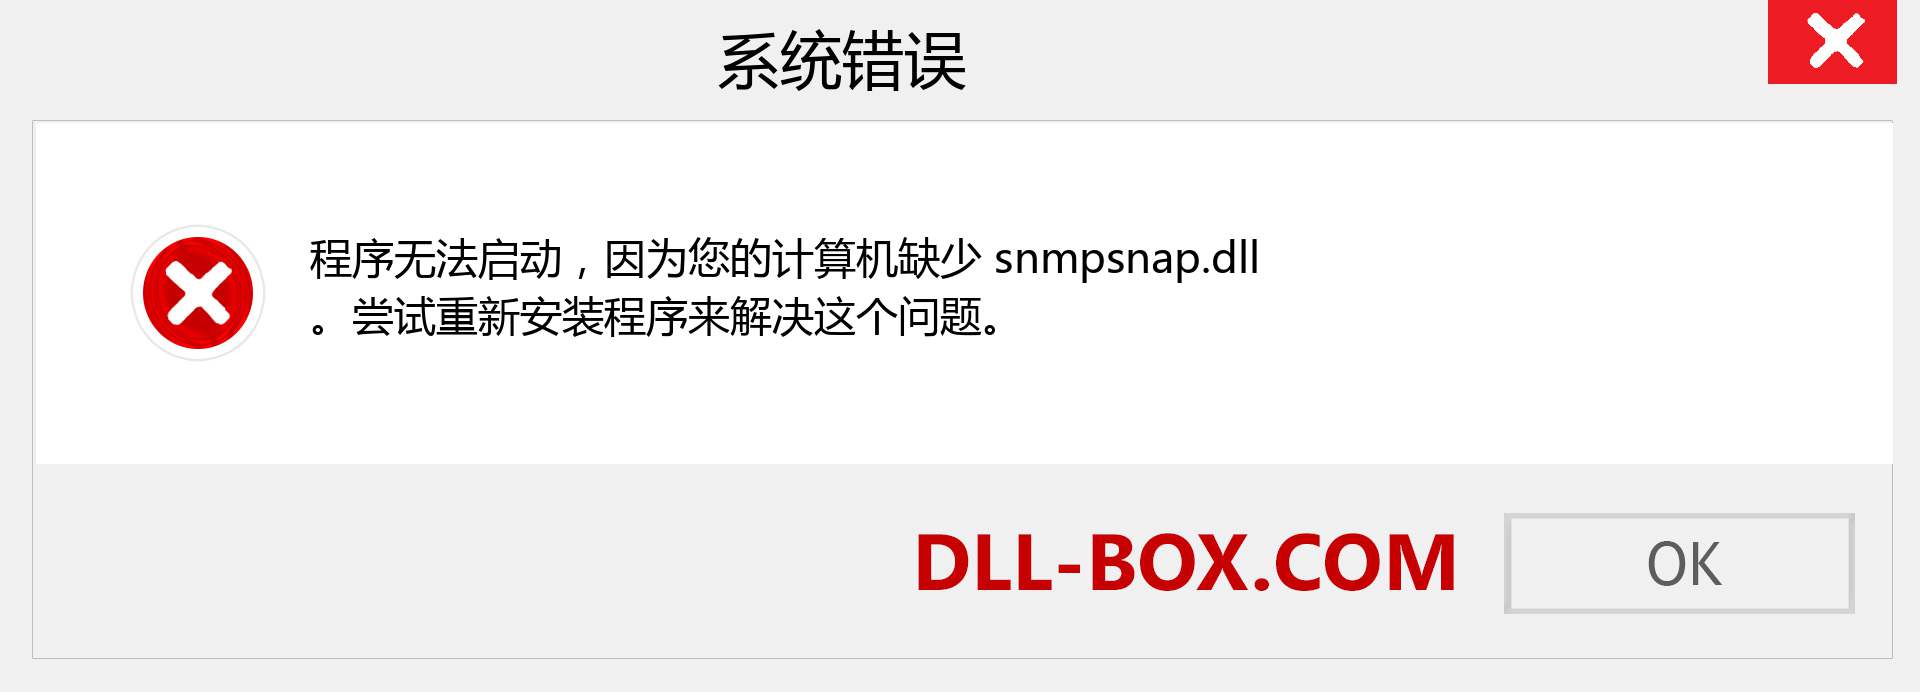 snmpsnap.dll 文件丢失？。 适用于 Windows 7、8、10 的下载 - 修复 Windows、照片、图像上的 snmpsnap dll 丢失错误